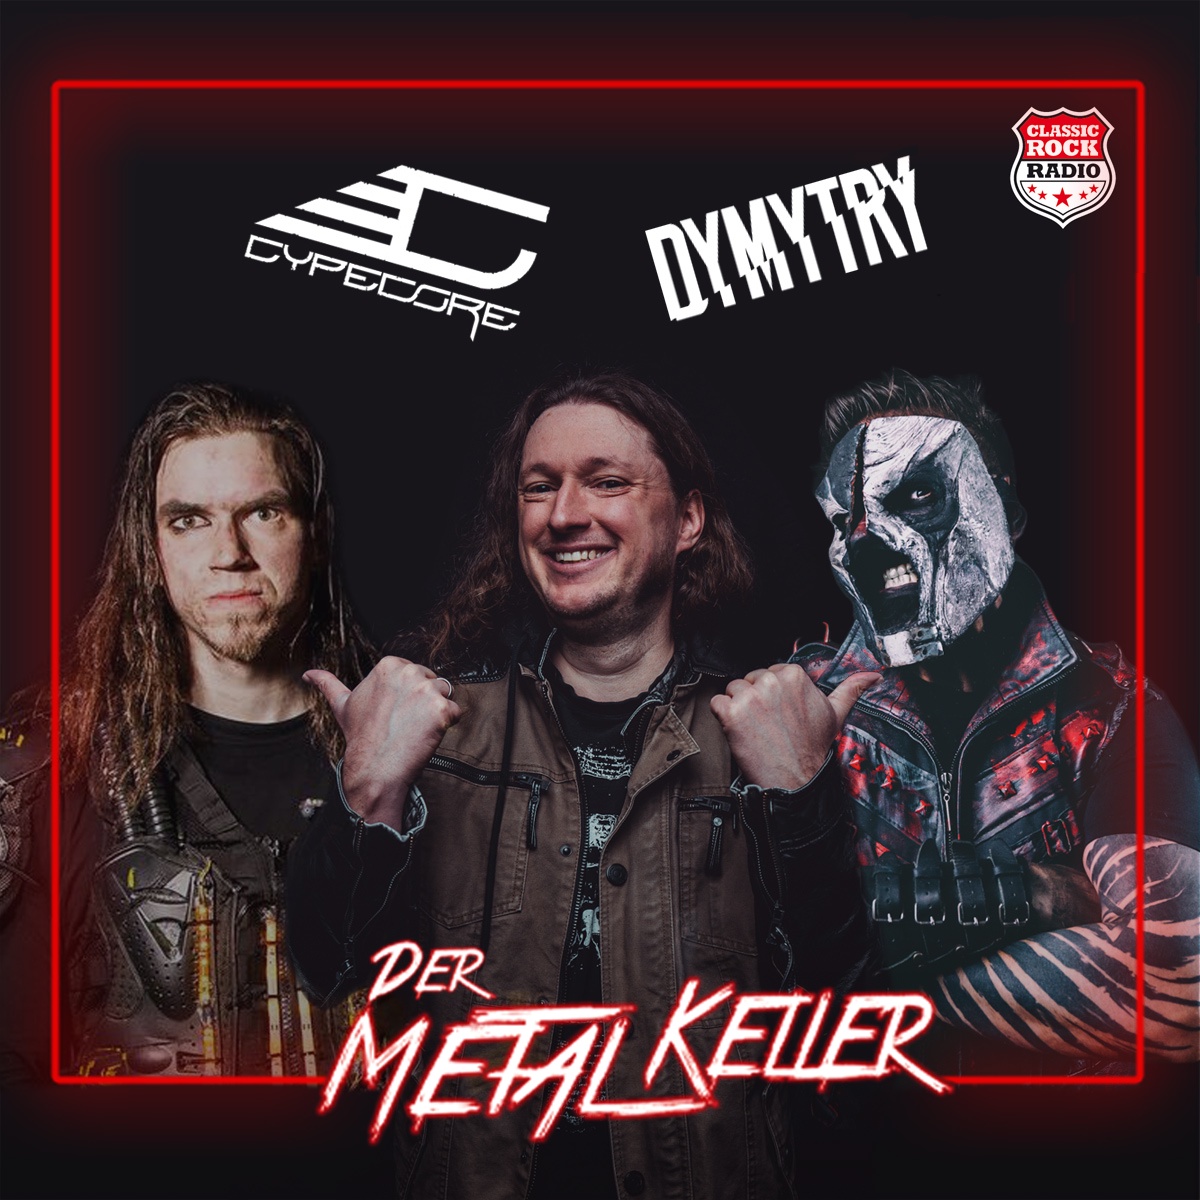 Schwanz 'n' Hoses (feat. Dymytry und Cypecore) - Der Metalkeller - Der deutsche Metal-Podcast